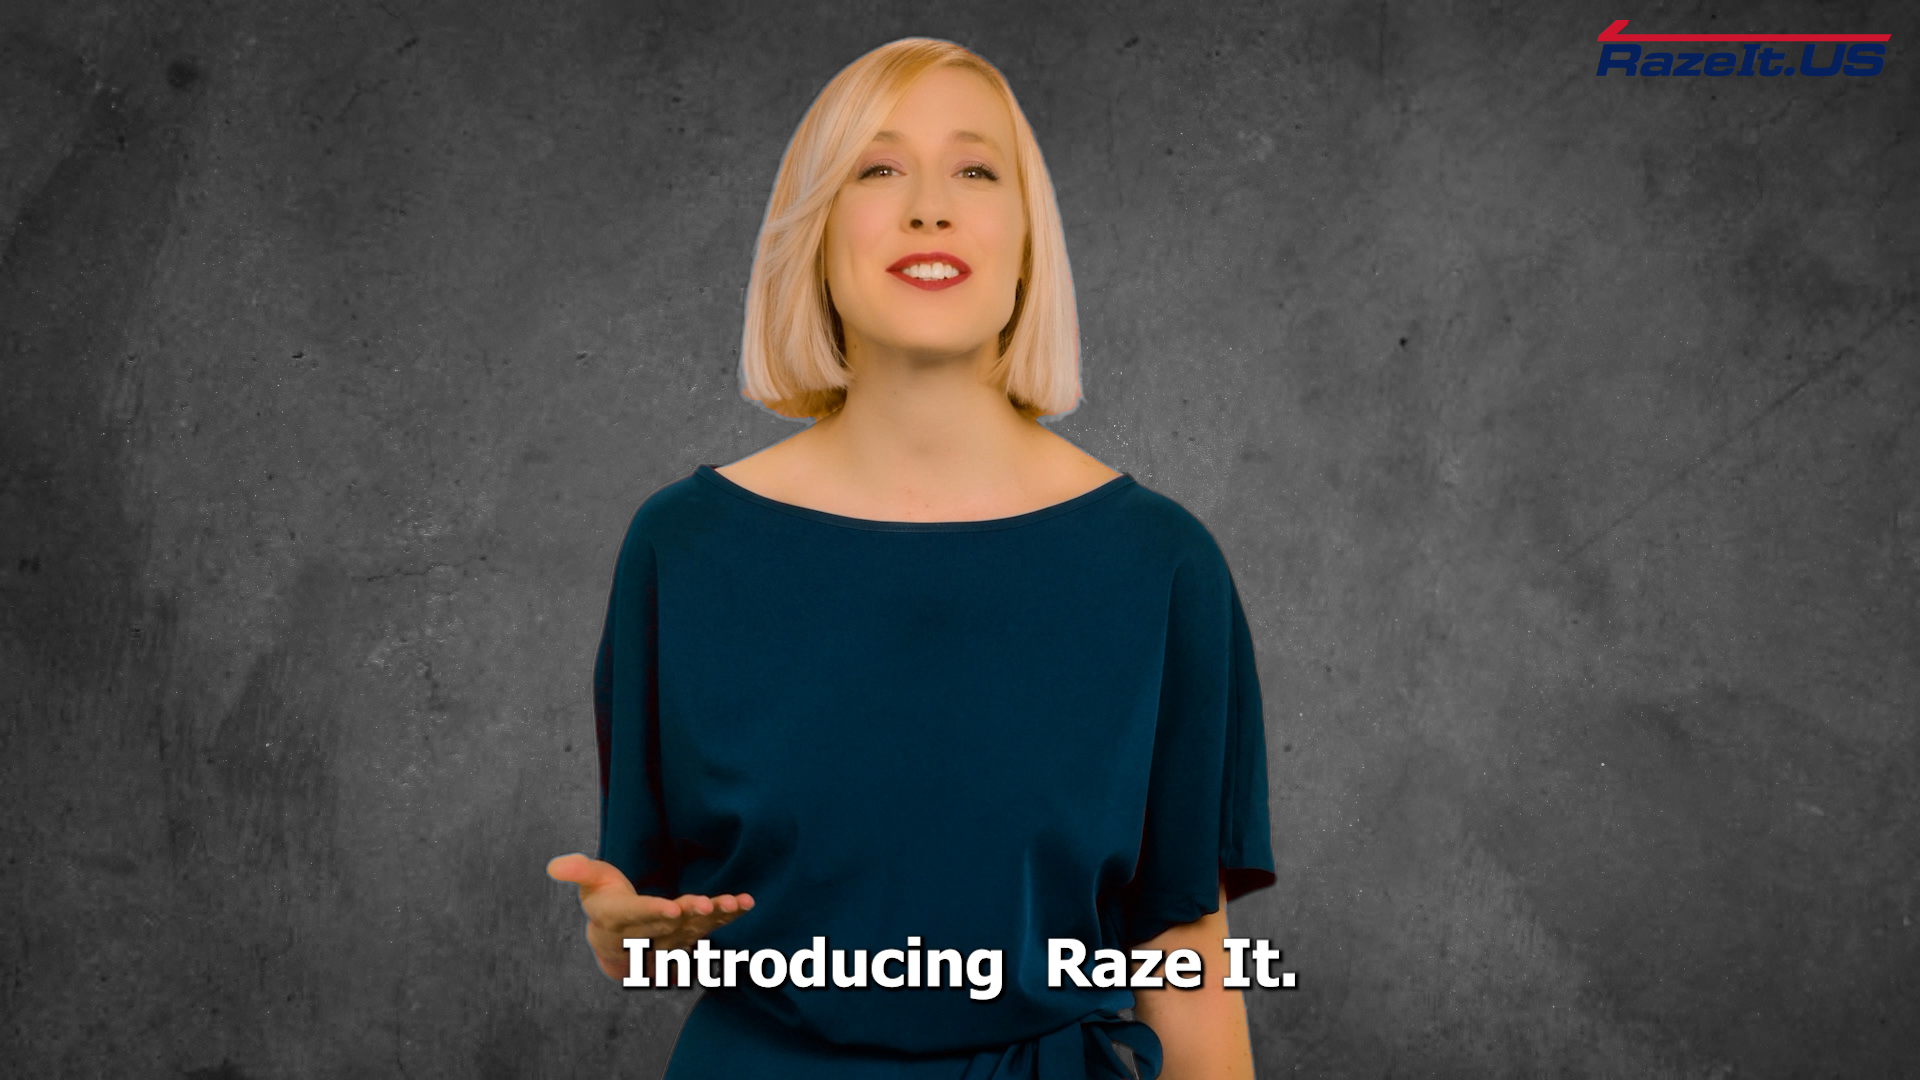 Load video: Raze It - Save It